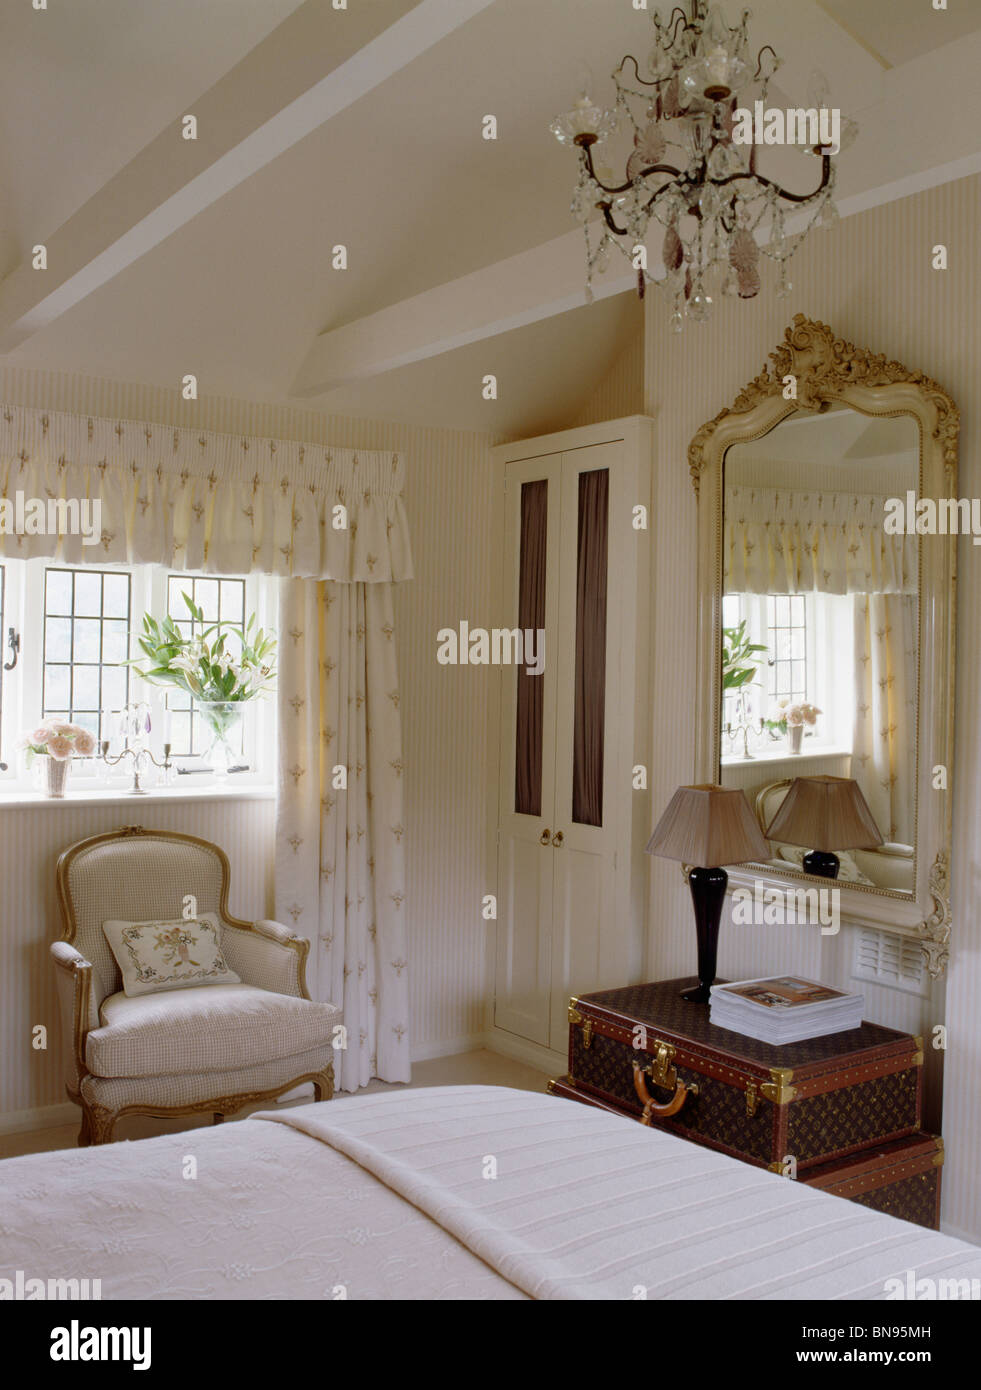 Kronleuchter und Apex Decke in Creme Land Schlafzimmer mit großen Spiegel  antiker Spiegel über der Kommode Stockfotografie - Alamy